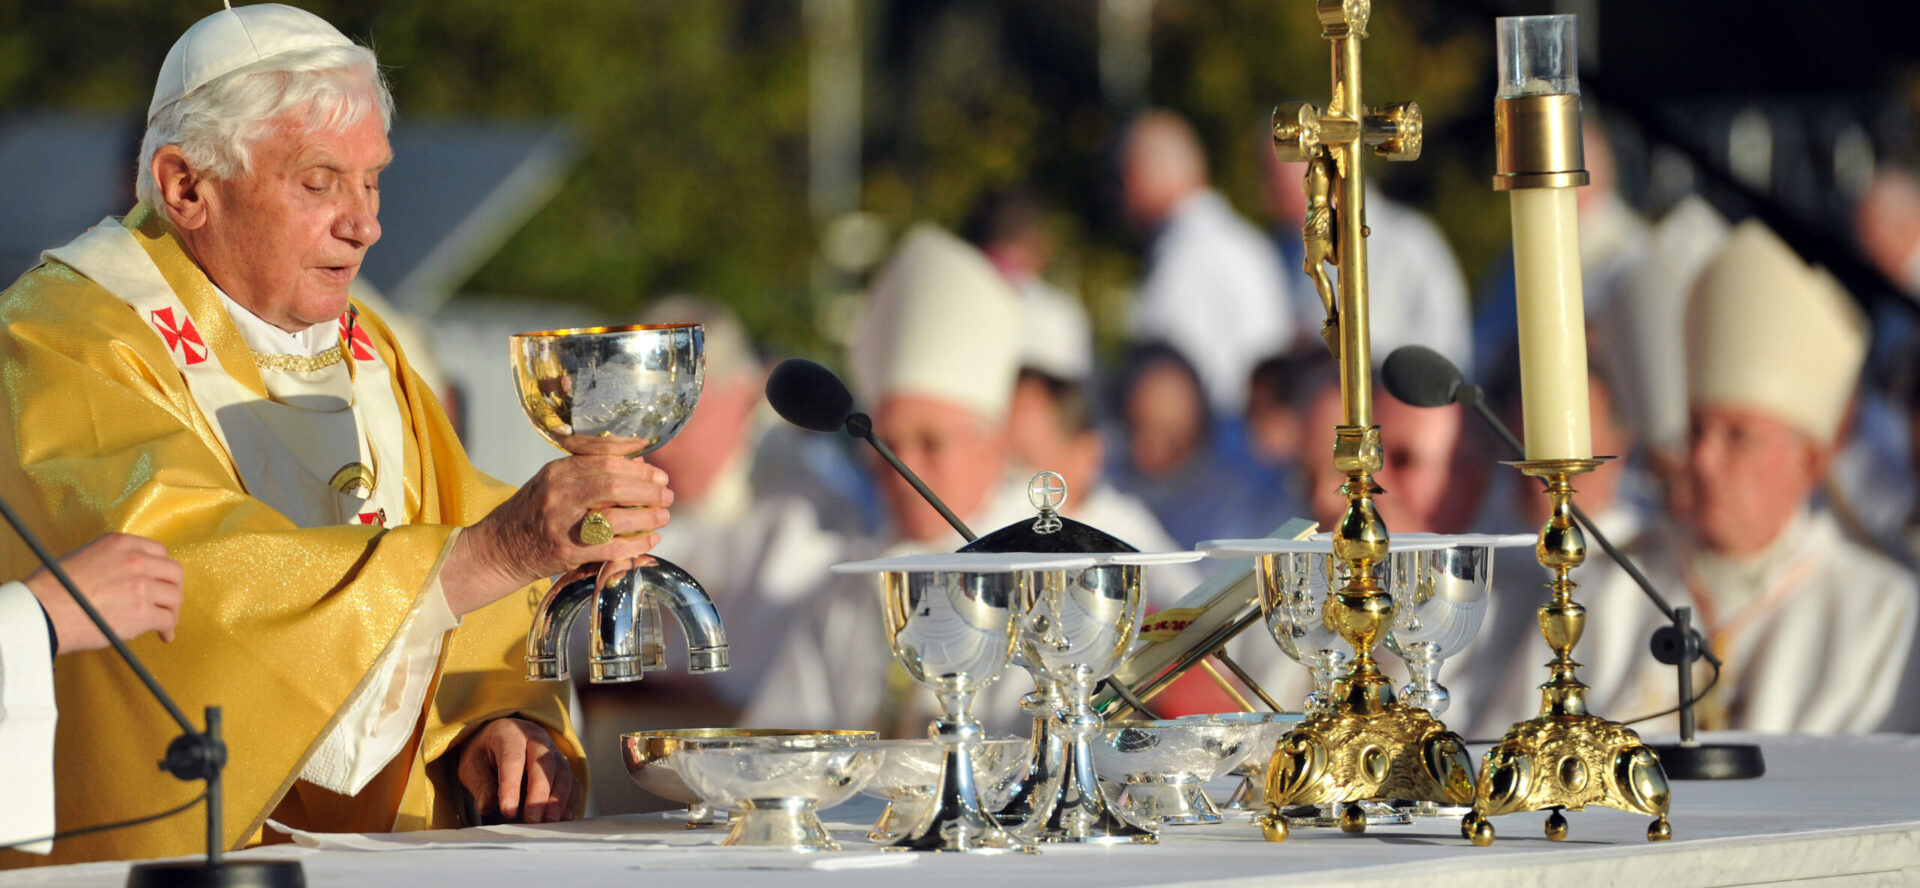 Benoît XVI a eu un rapport mouvementé avec la liturgie | © Flickr/ Mazur/www.thepapalvisit.org.uk/ CC BY-NC 2.0